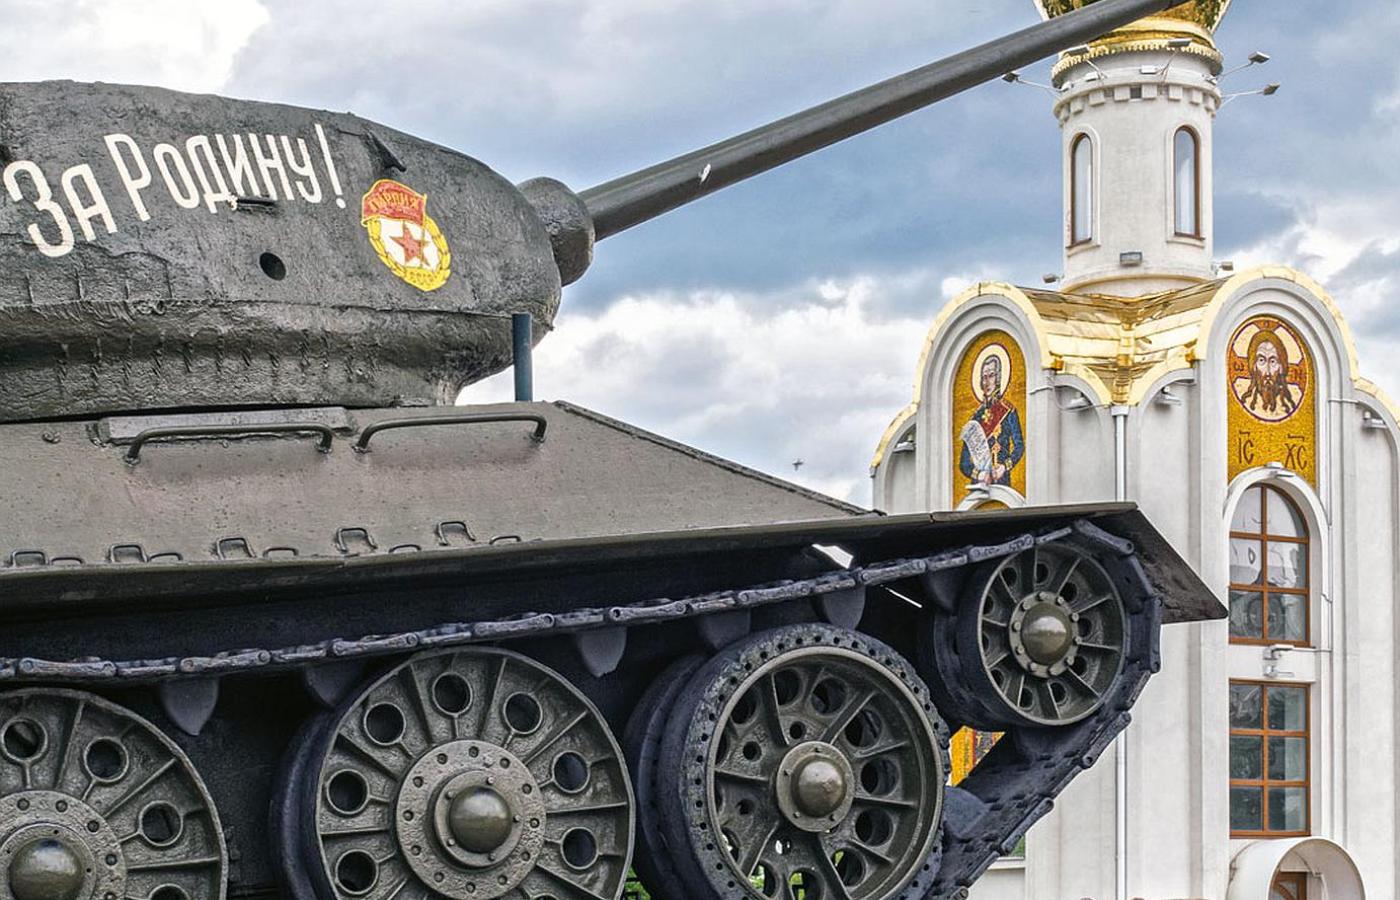 Pomnik zwycięstwa w Tyraspolu, stolicy Naddniestrza.